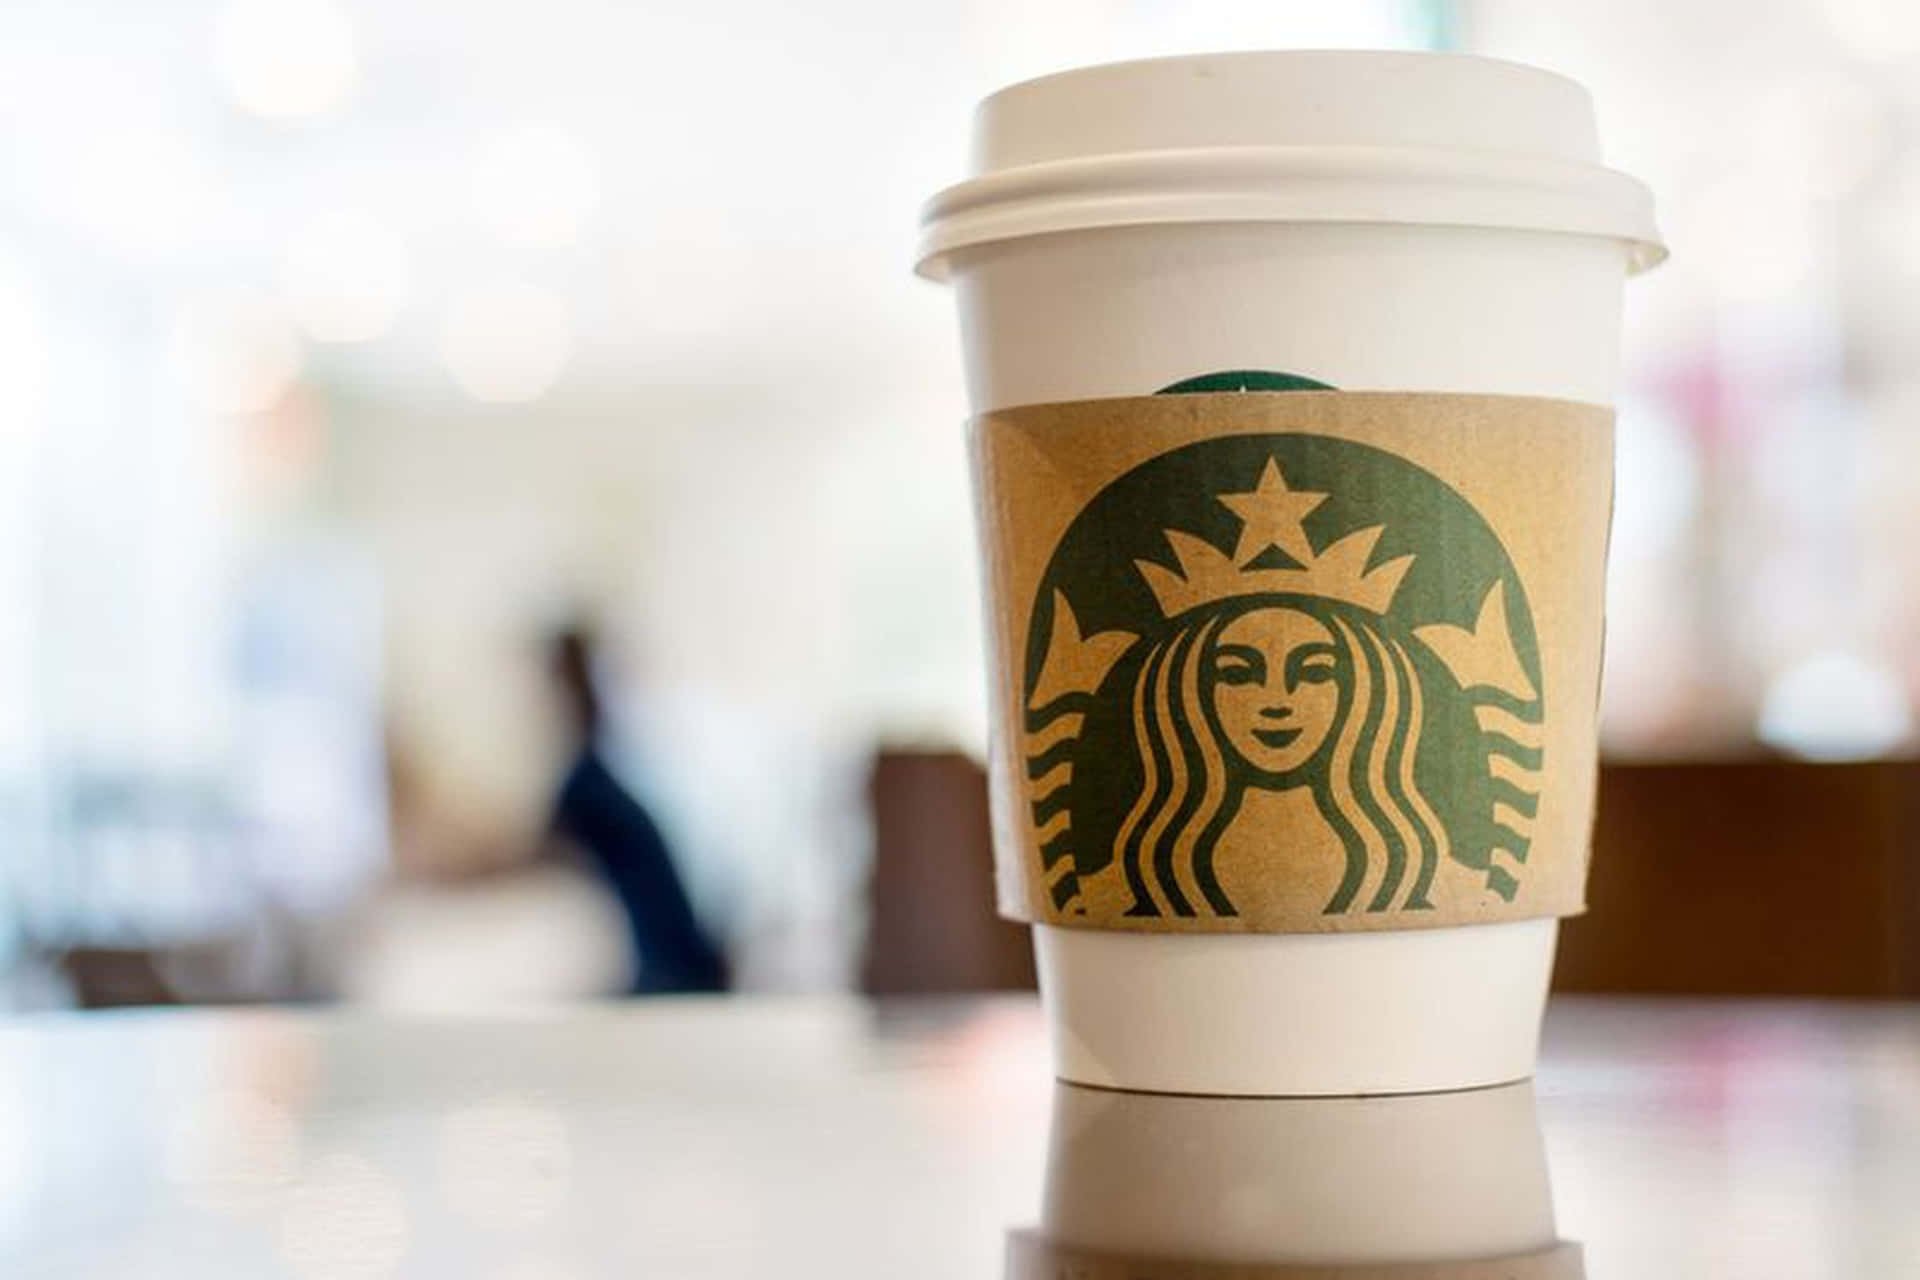 Unatazza Di Caffè Bollente Da Starbucks Per Aiutare Ad Iniziare La Giornata.